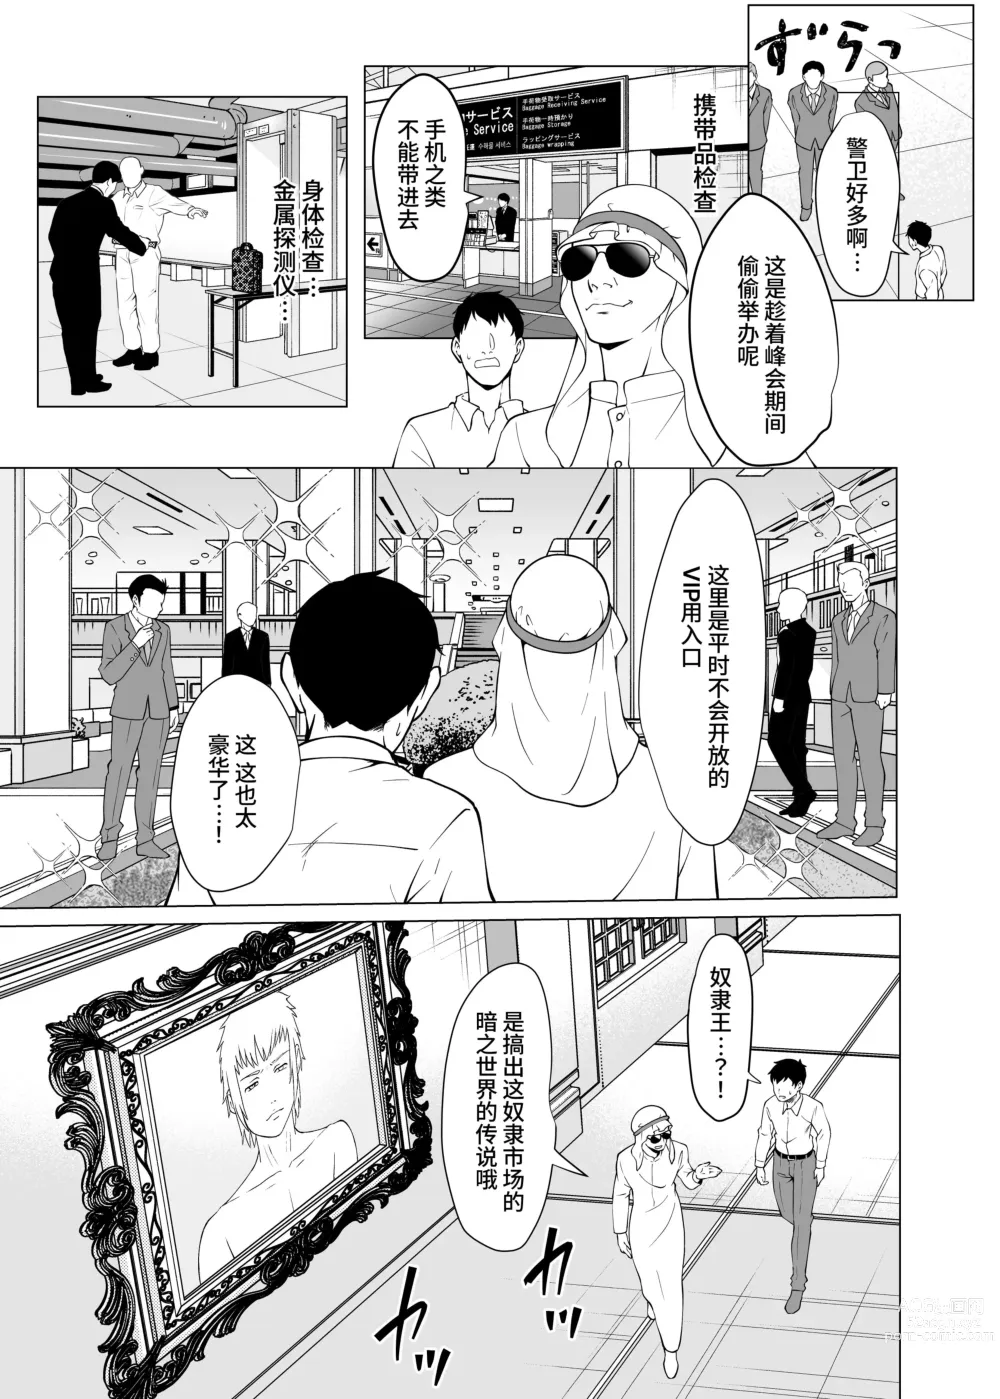 Page 10 of doujinshi 奴隶市场的真实情况～东京国○展示场上真实存在于现代日本的淫荡阴暗面～